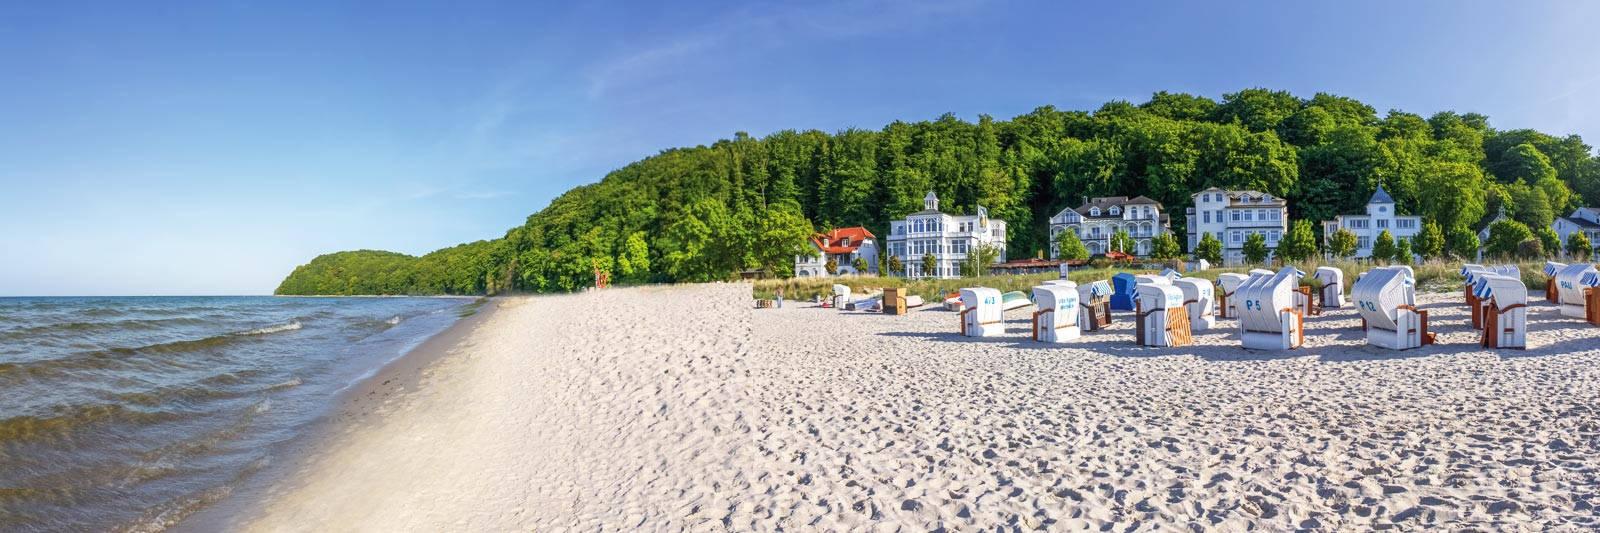 Angelurlaub auf Fischland-Darß-Zingst -  Ferienwohnungen, Ferienhäuser und Angelhäuser - tourist-online.de